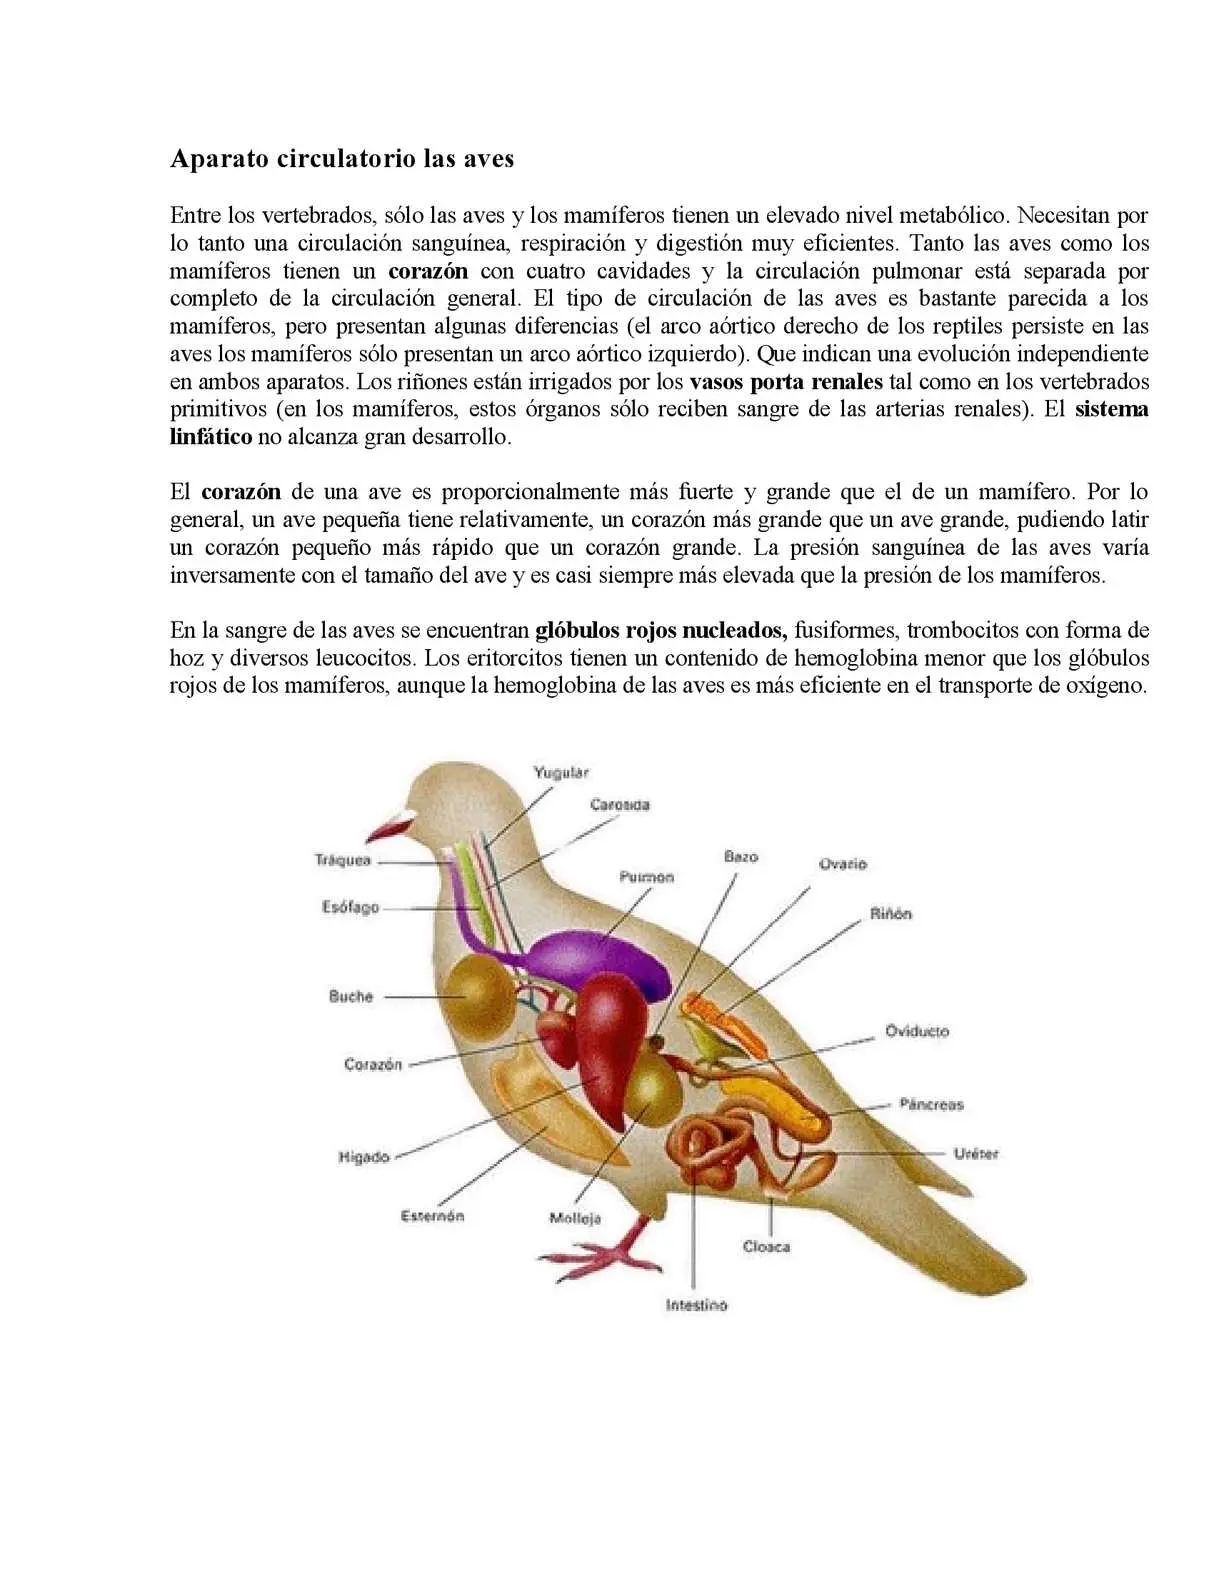 el sistema circulatorio de un ave - Qué es el sistema circulatorio y cuáles son sus partes